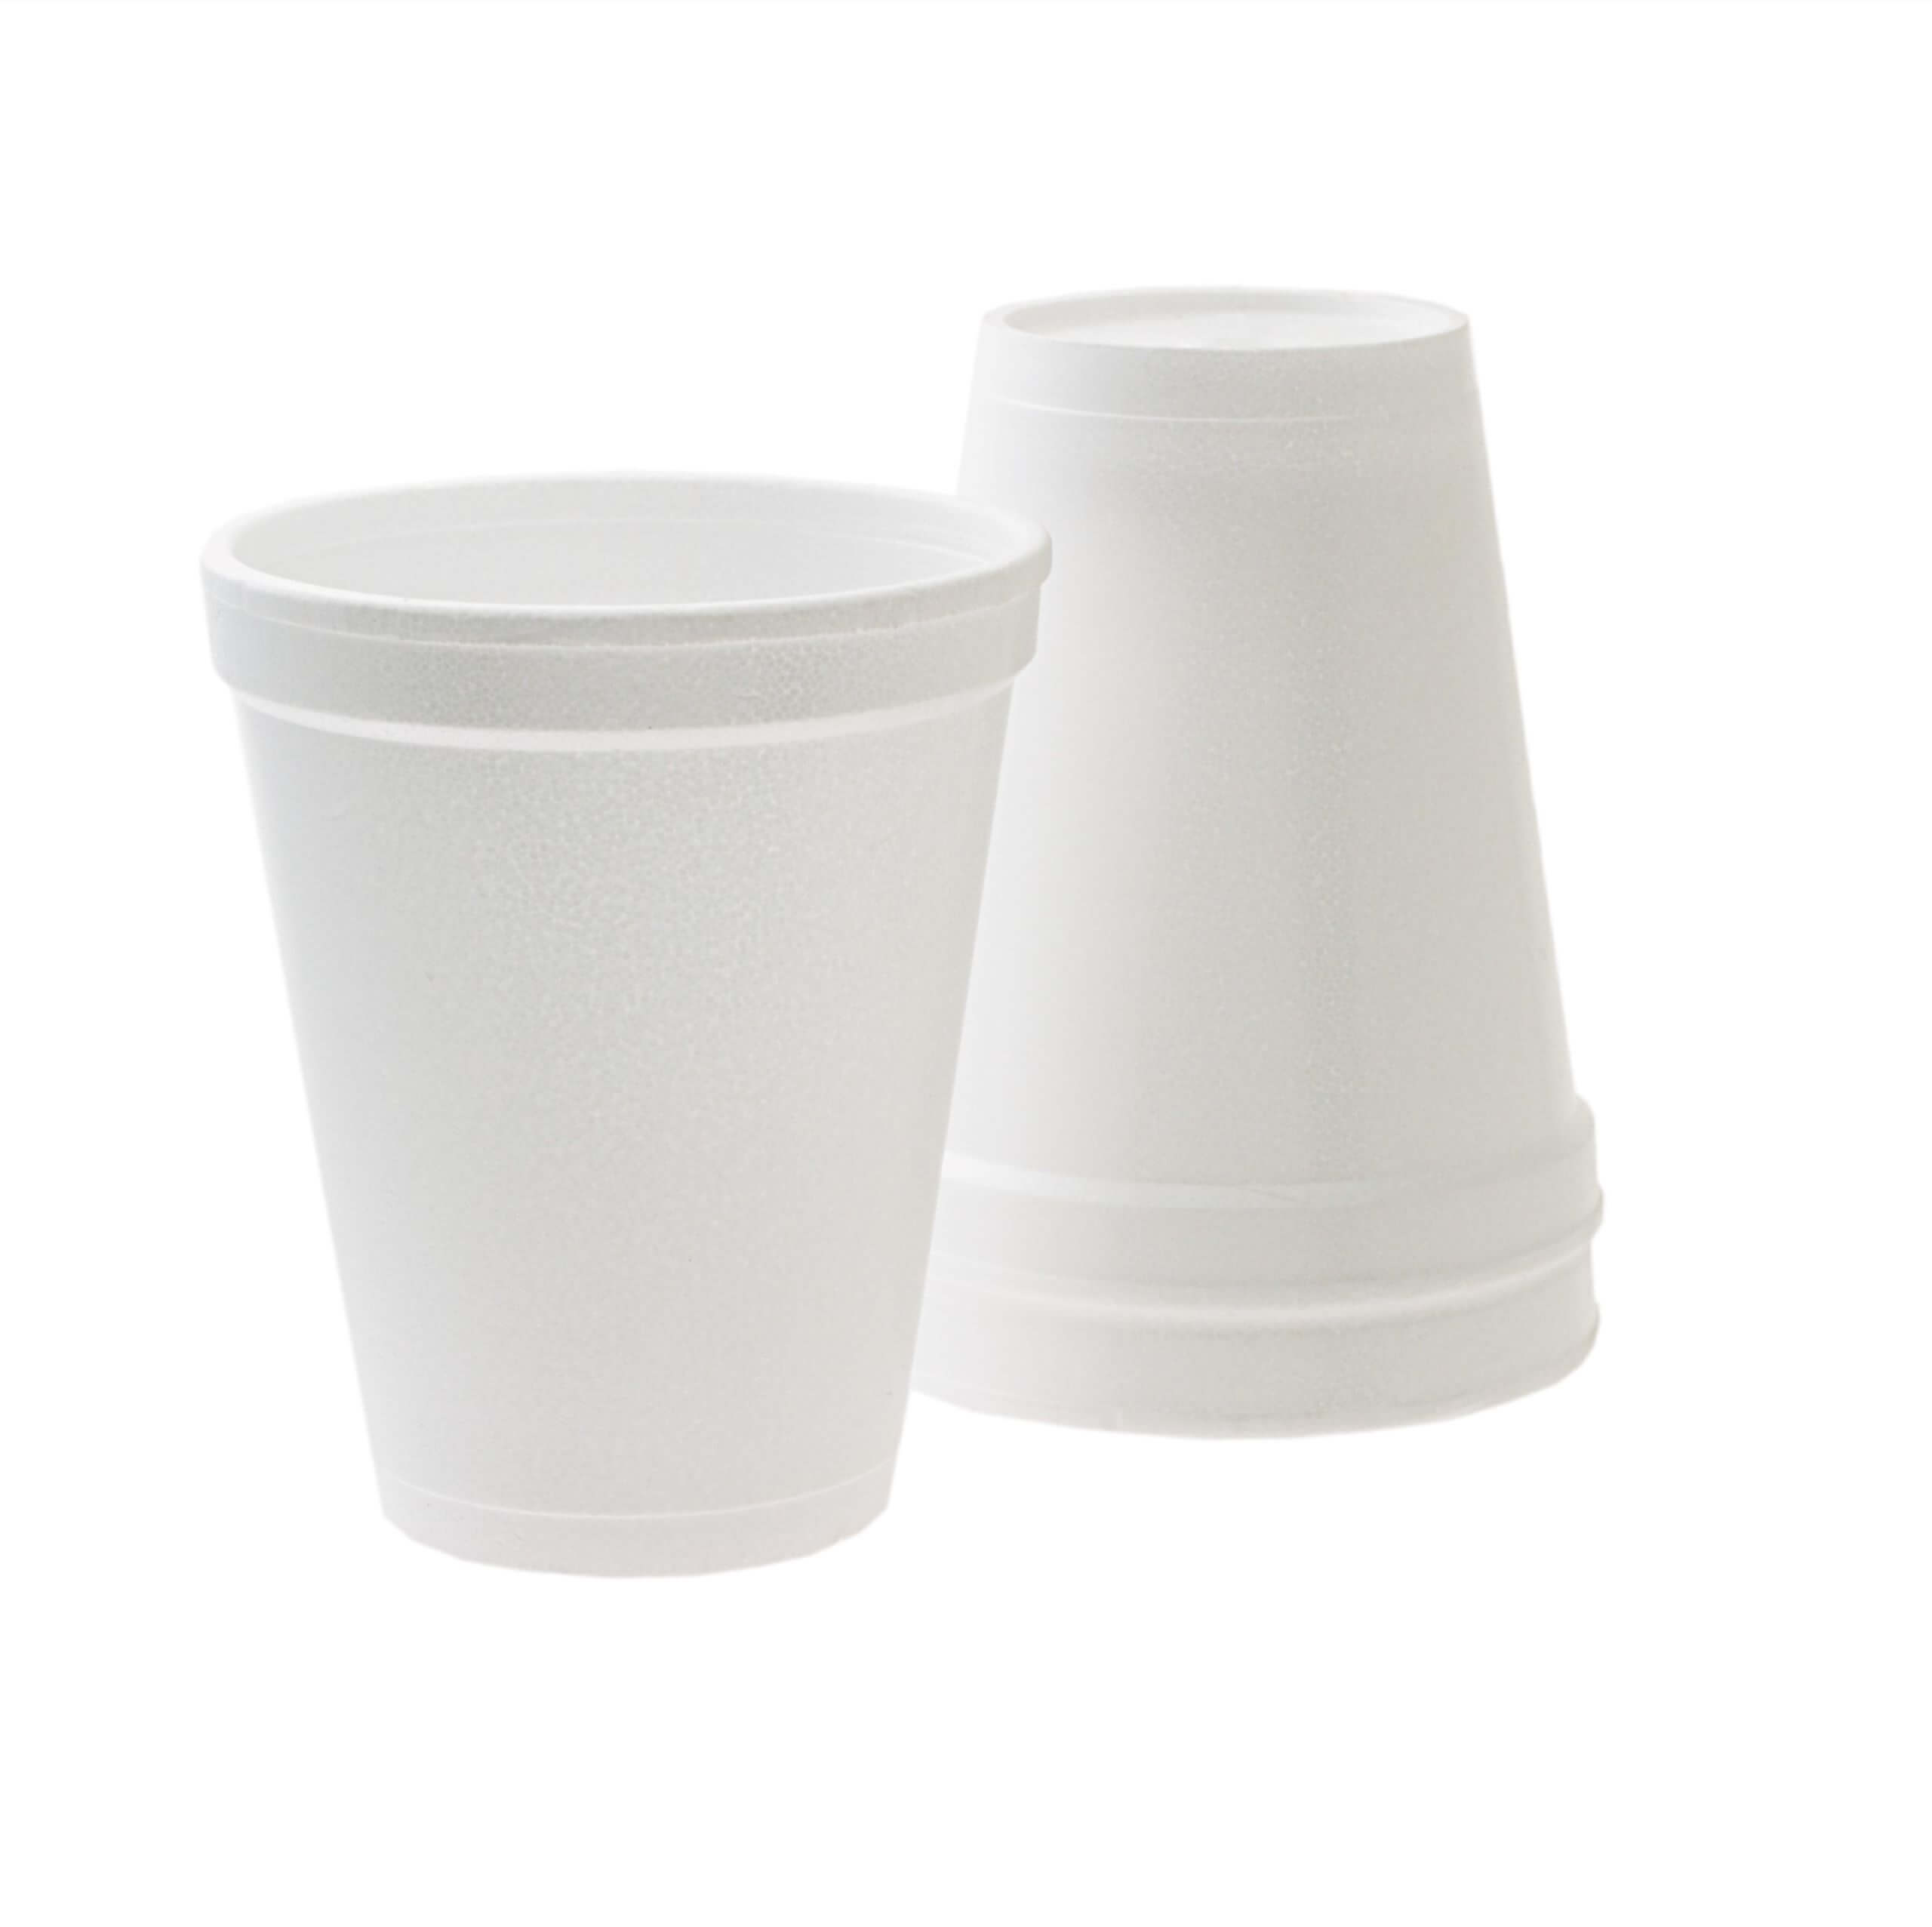 An image of a few Polystyrene Foam Cups.